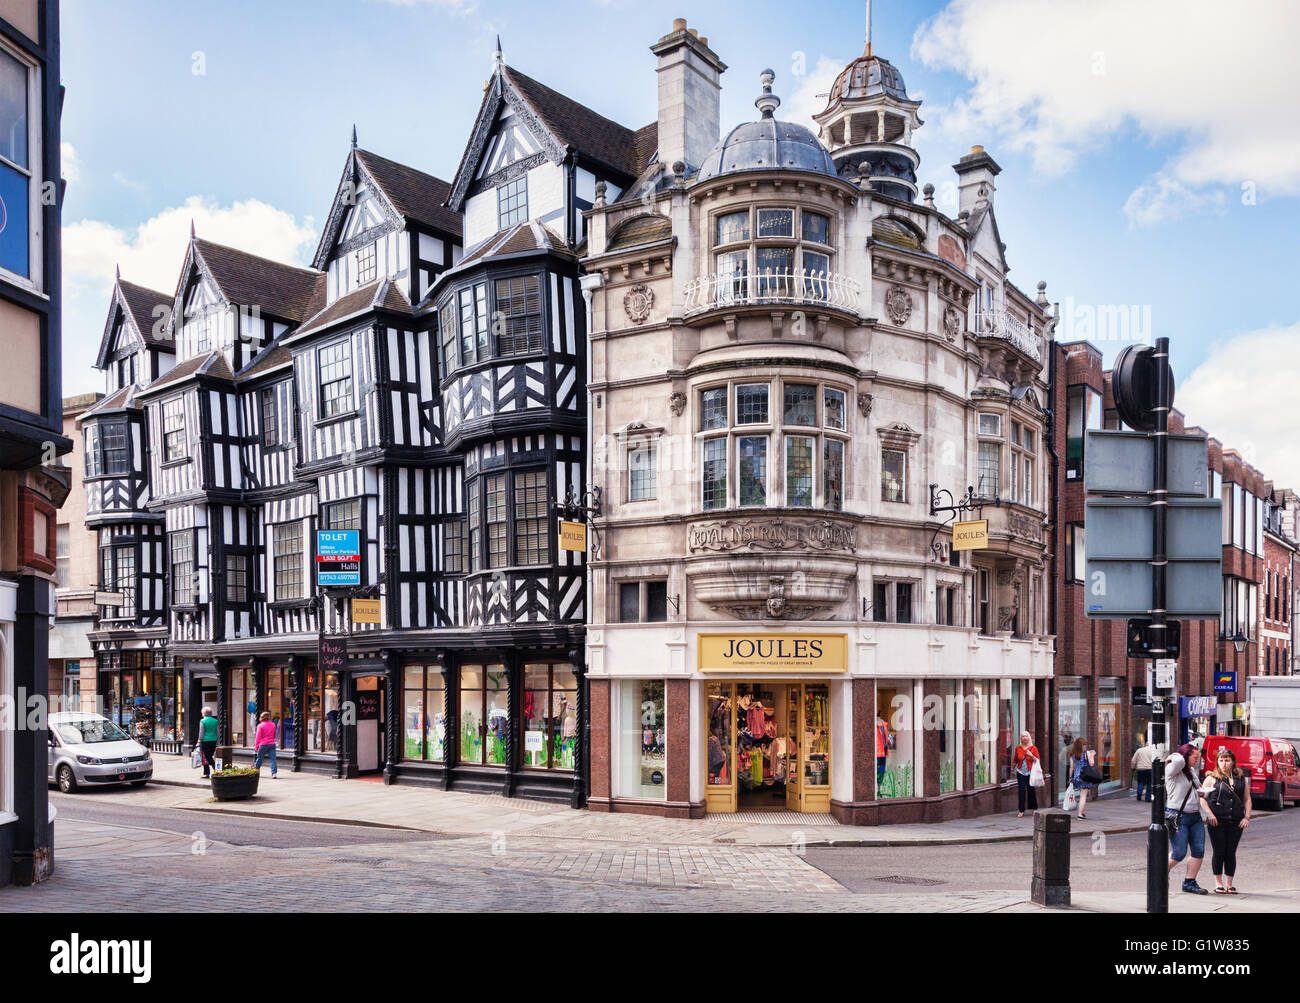 Le centre-ville de Shrewsbury, haut à gauche, la tête sur la droite Mardol, Shropshire, England, UK Banque D'Images